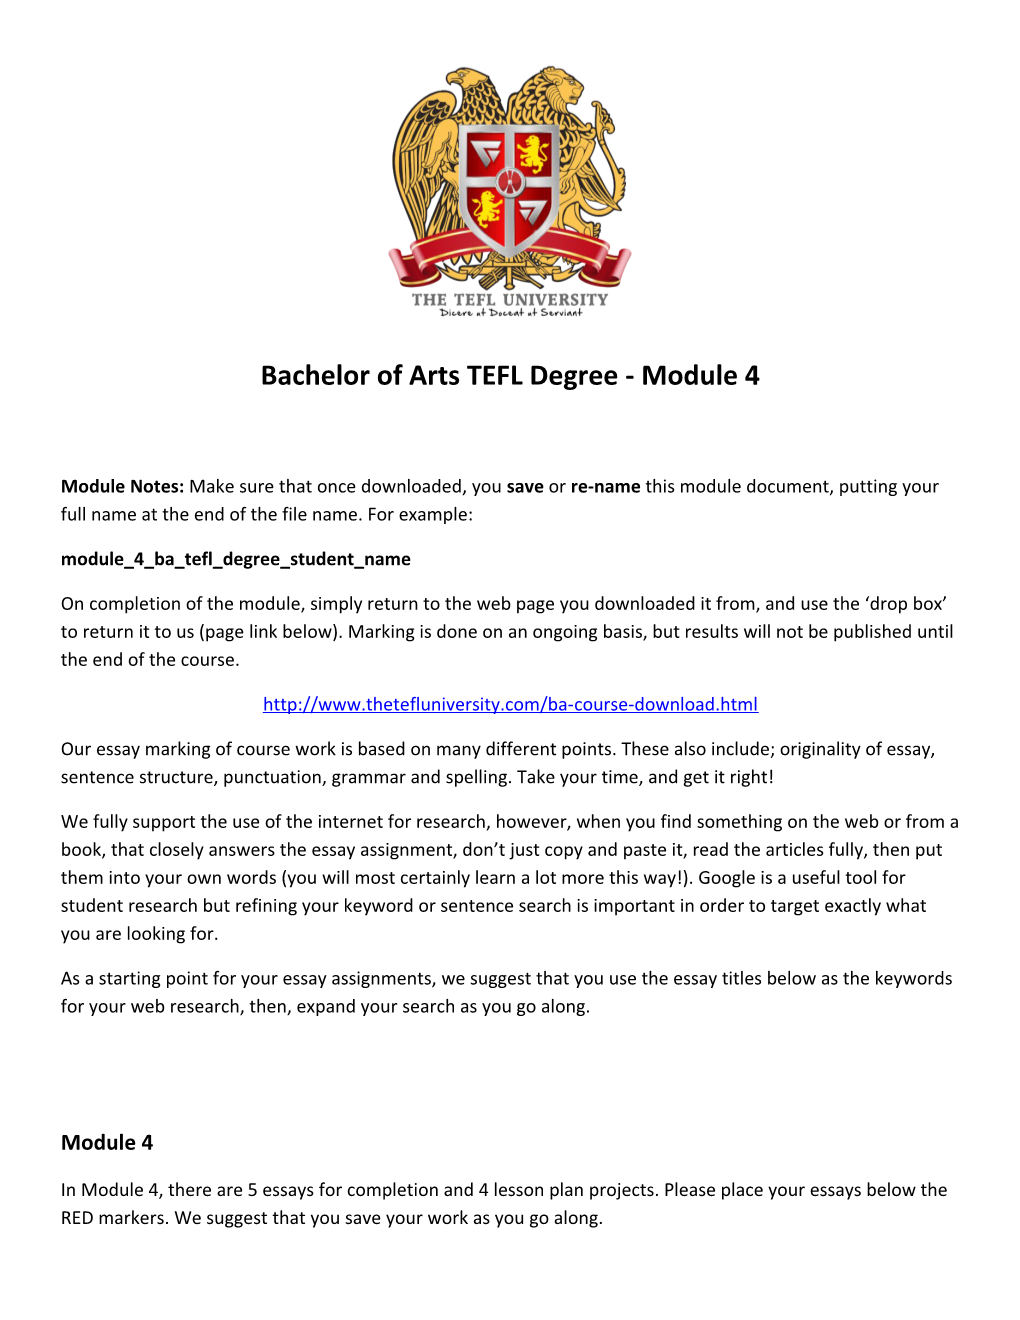 Bachelor of Arts TEFL Degree - Module 4